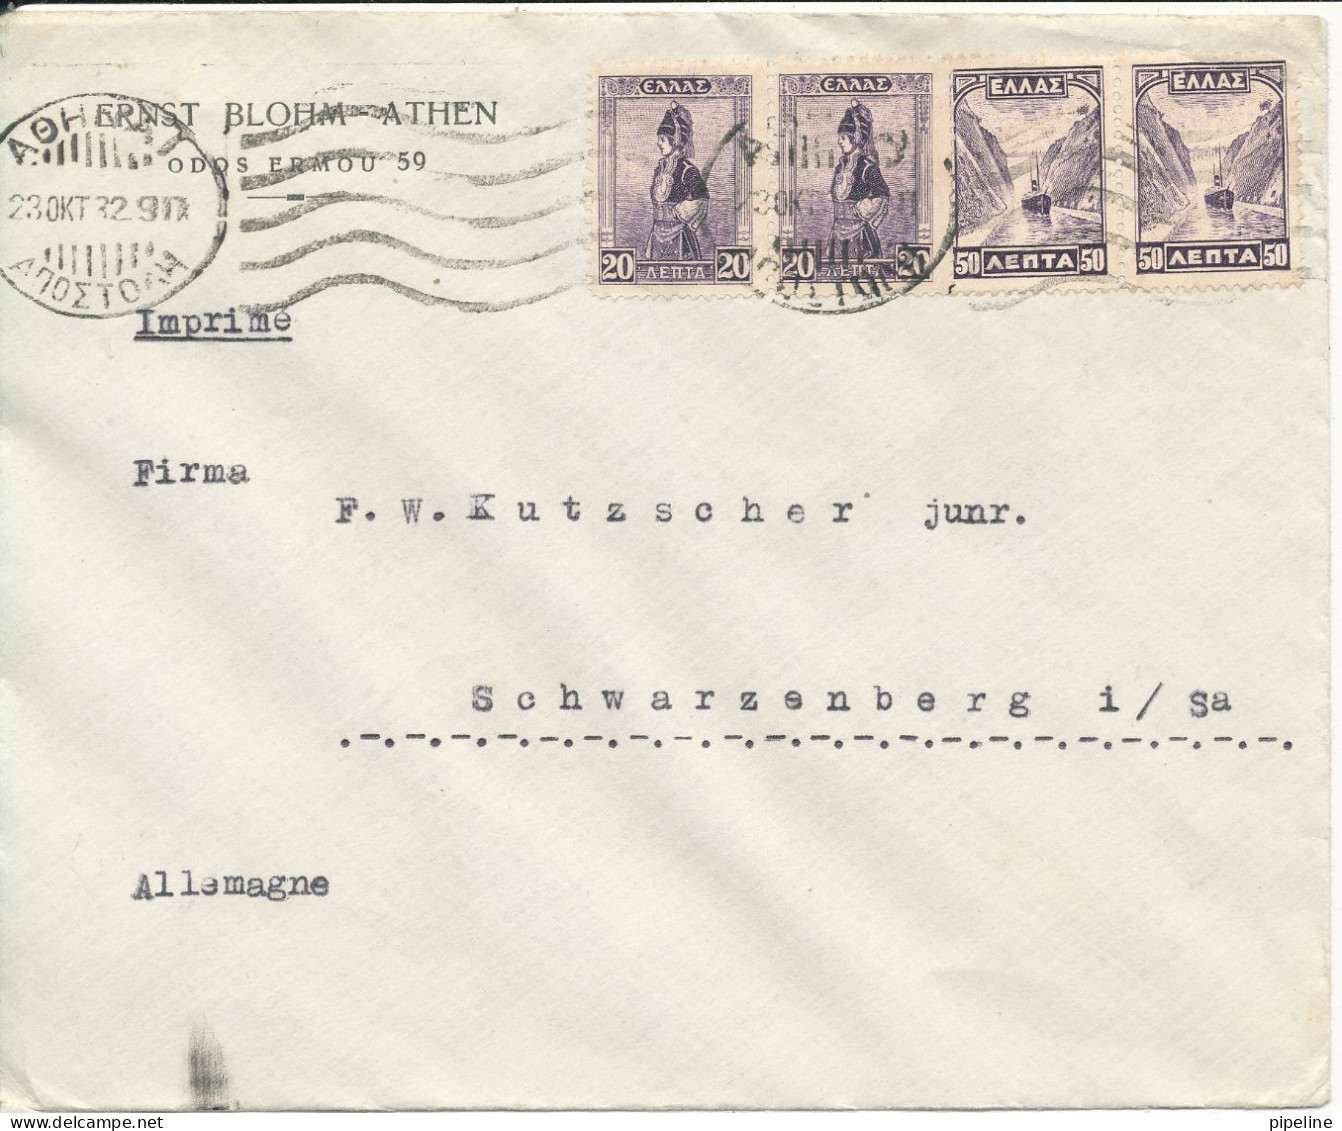 Greece Cover Sent To Germany 23-10-1932 - Briefe U. Dokumente